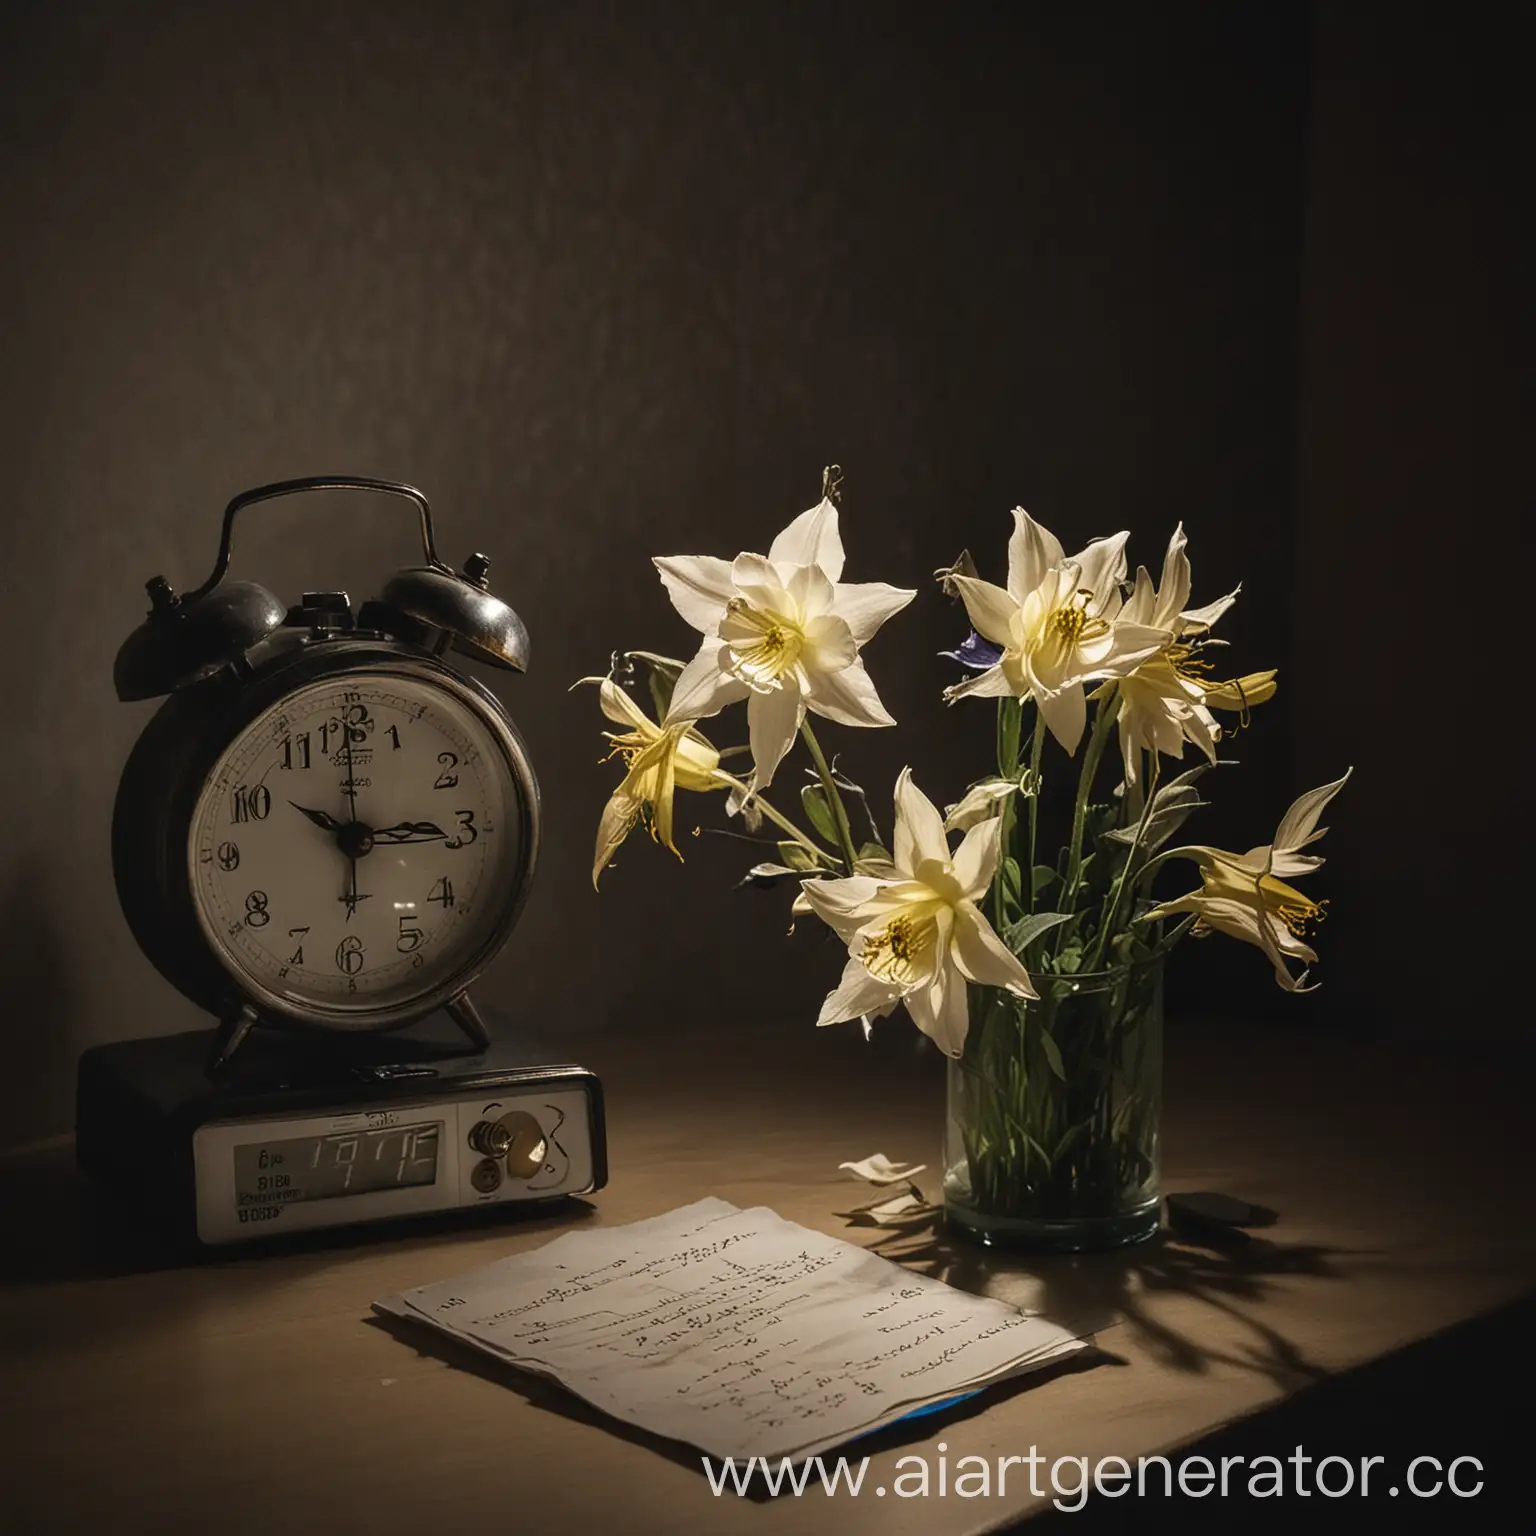 2 цветка, Прострел раскрытый, лежащие на тумбочке рядом с электронным будильником, на котором буквами написано бессрочно. В очень приглушённом свете ночника